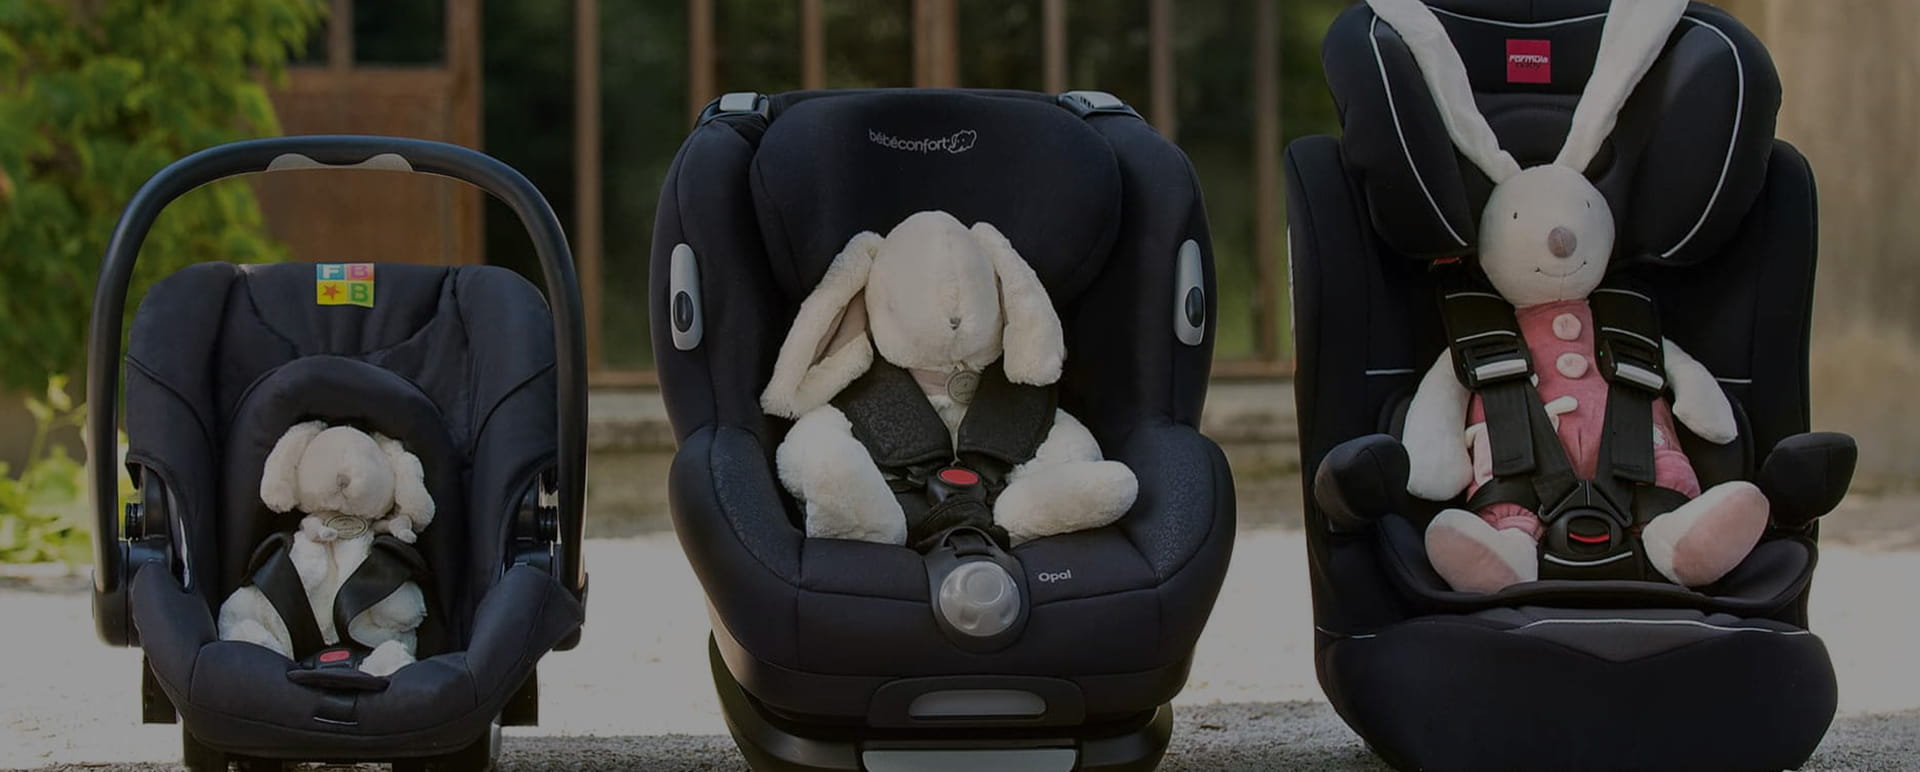 Choisissez la Nacelle auto Groupe 0, nacelles pour bébé <10kg : Aubert